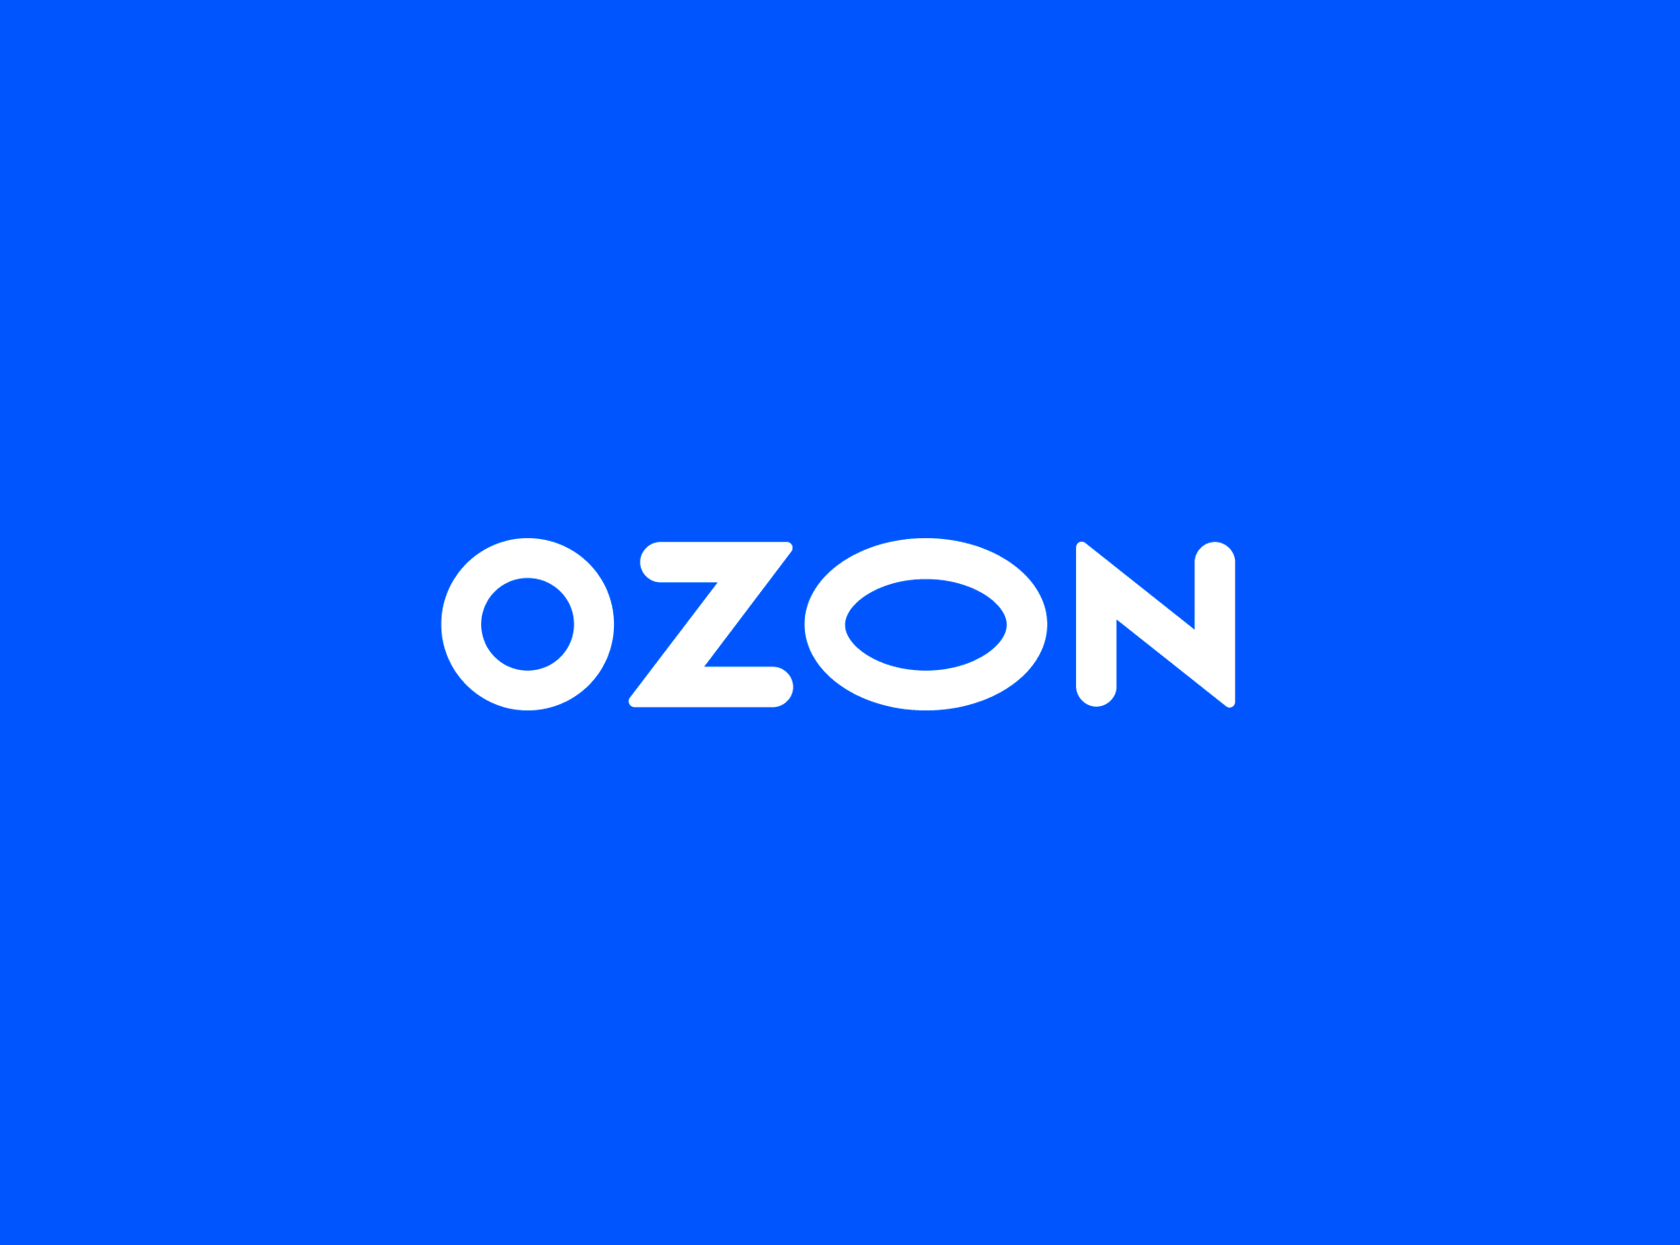 Т д озон. OZON. Озон заставка. OZON эмблема. Логотип Озон фото.